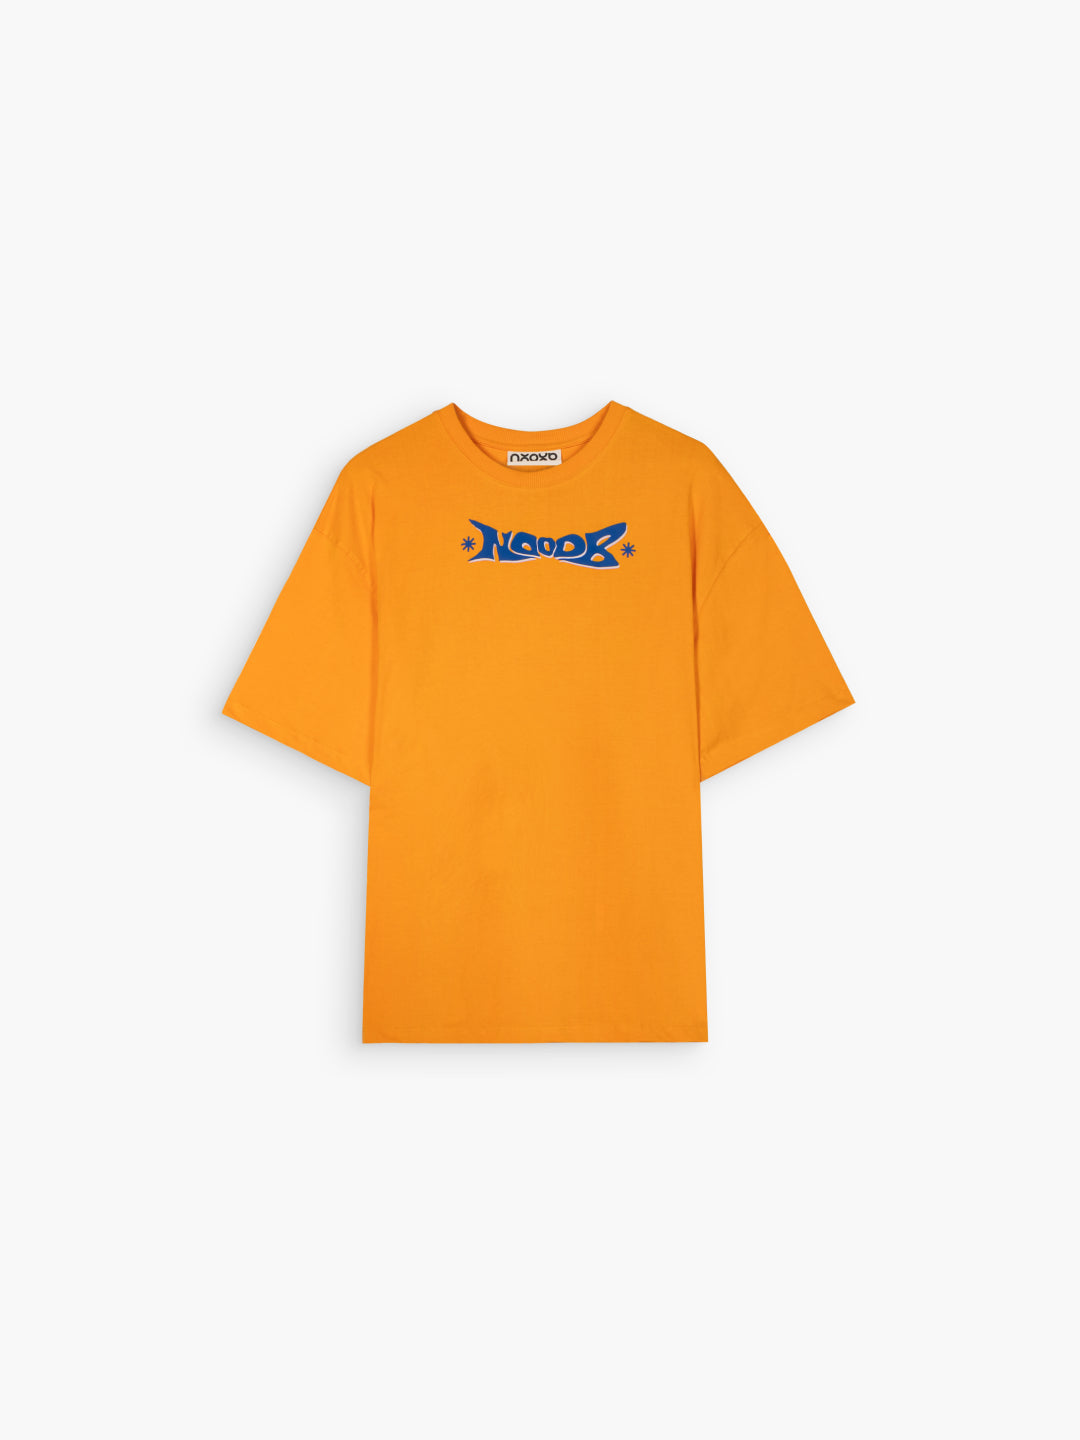 Women's Oversized T-Shirts Orange